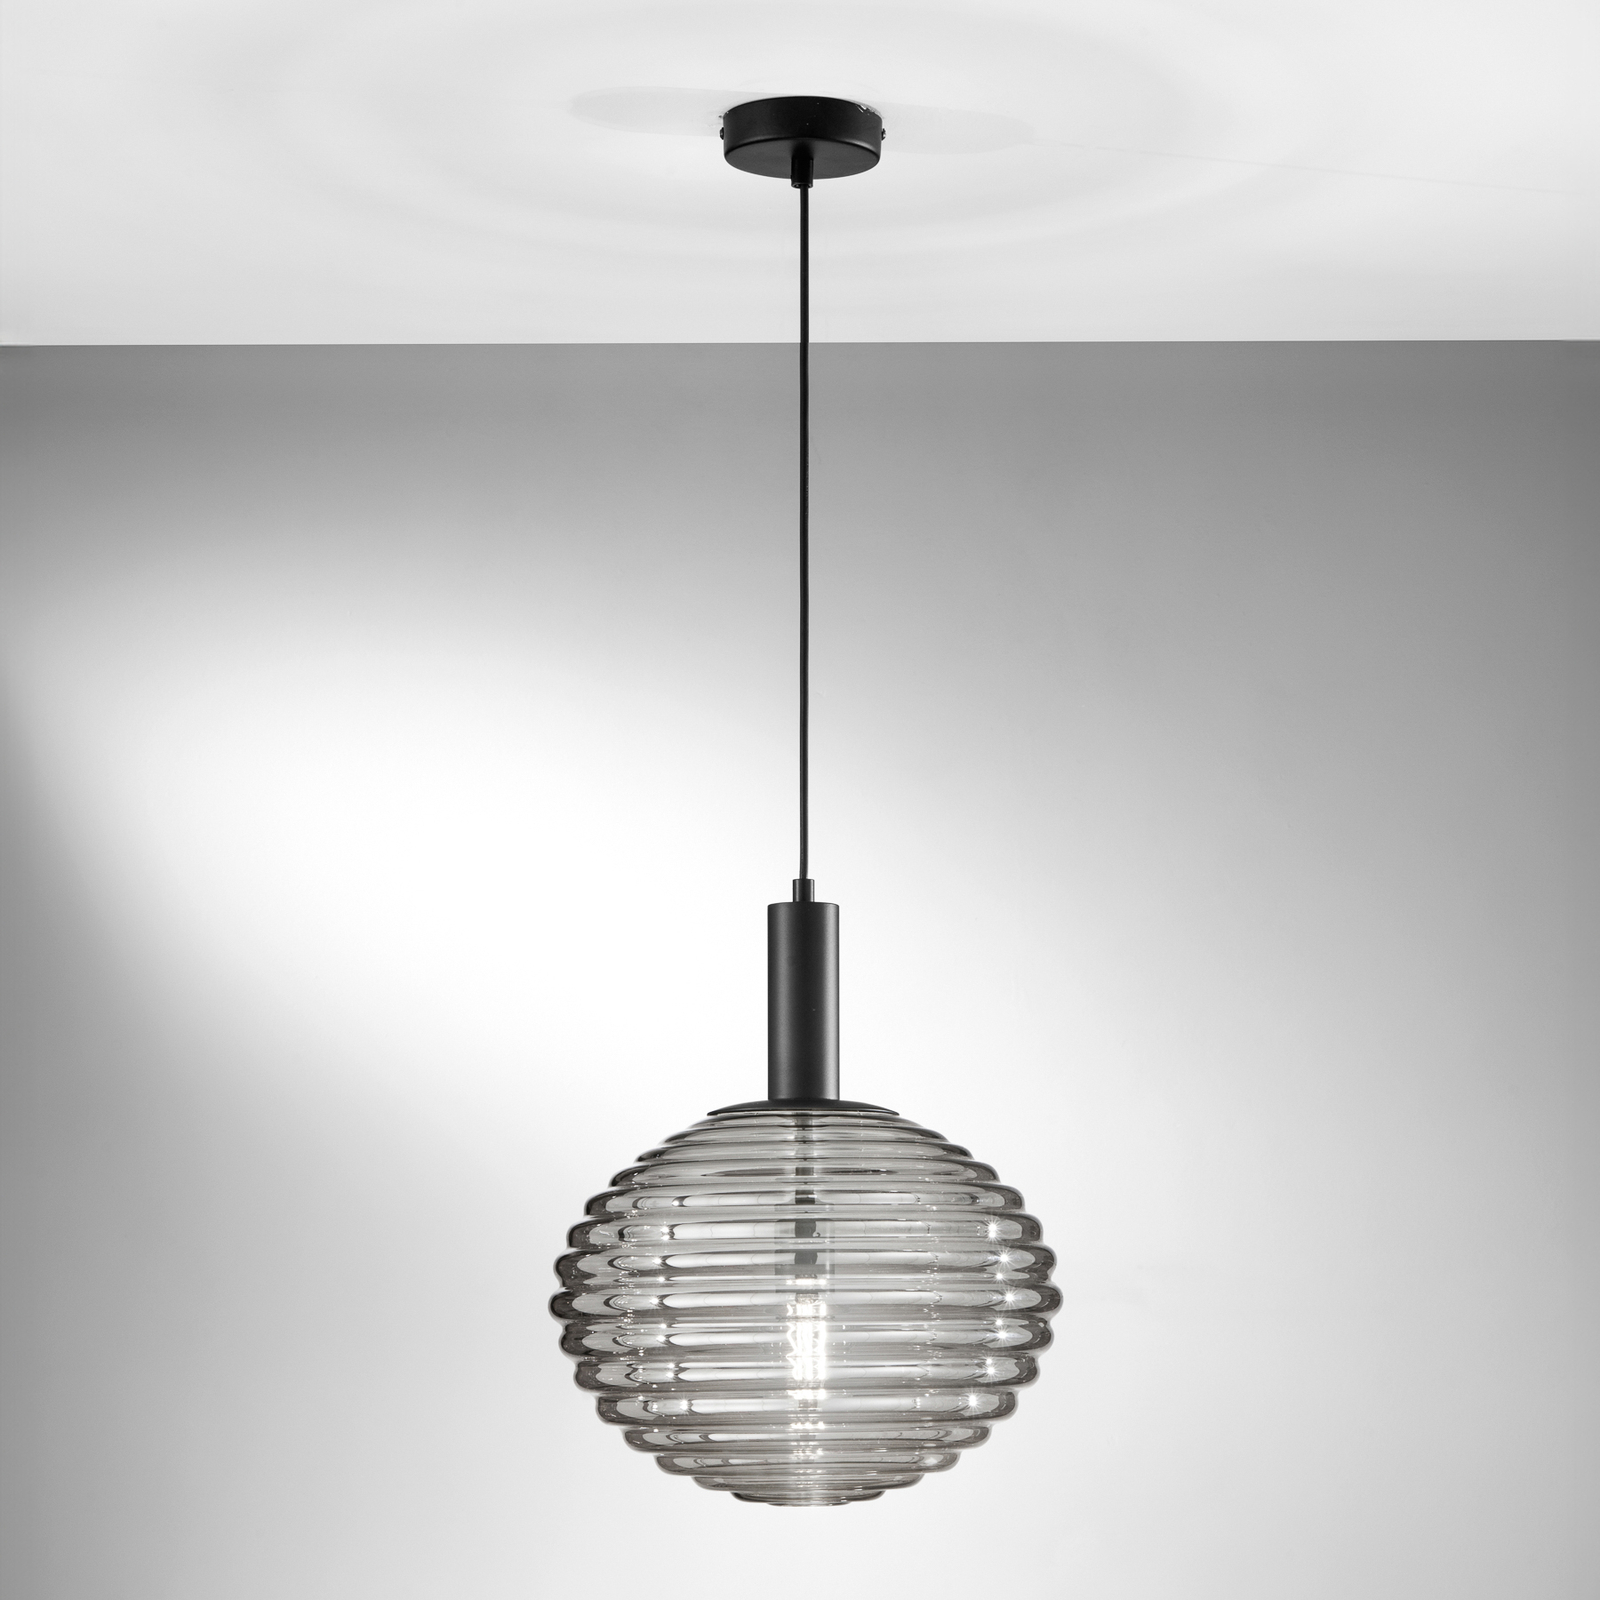 Ripple hanglamp, zwart/rookgrijs, Ø 32 cm